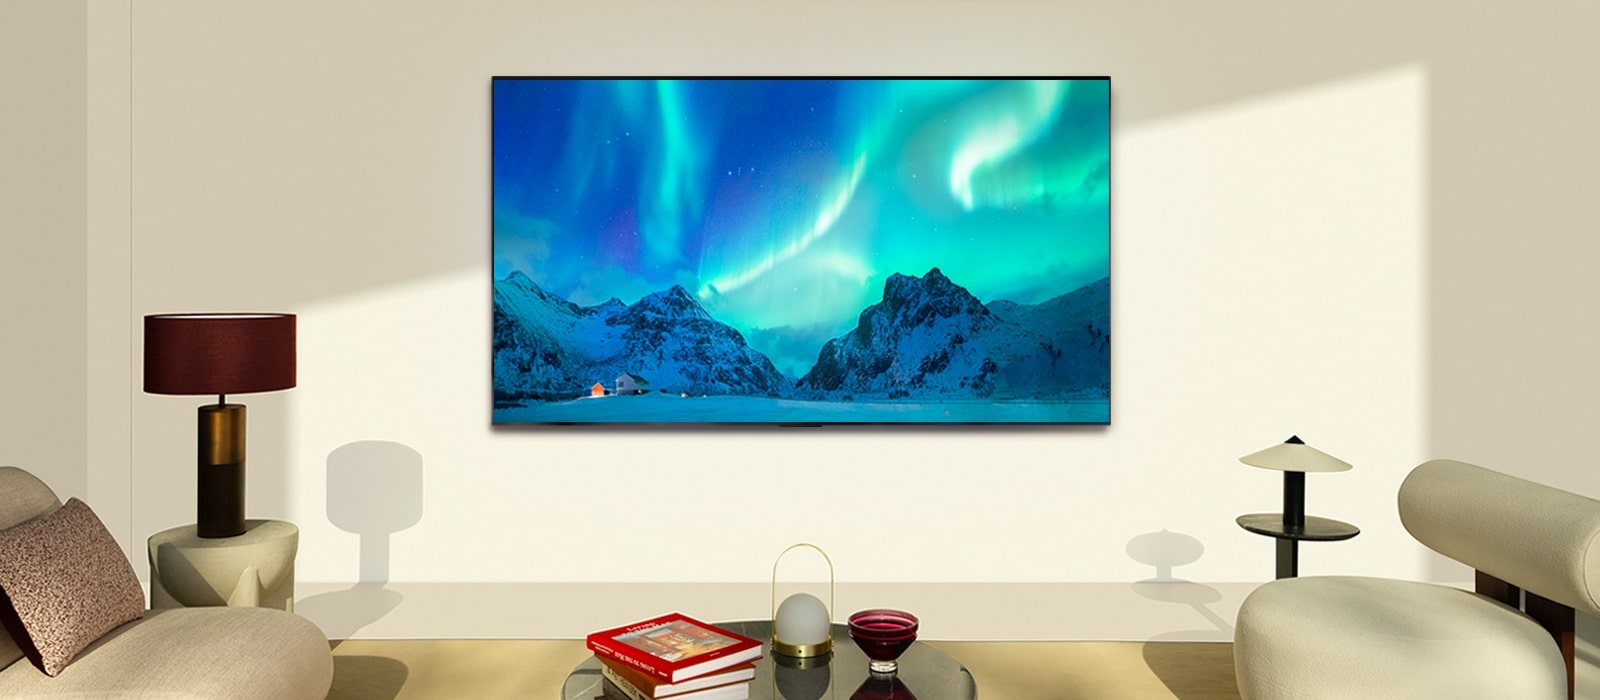 LG OLED TV v moderním obývacím prostoru ve dne. Na obrazovce se zobrazuje obraz polární záře s ideální úrovní jasu.